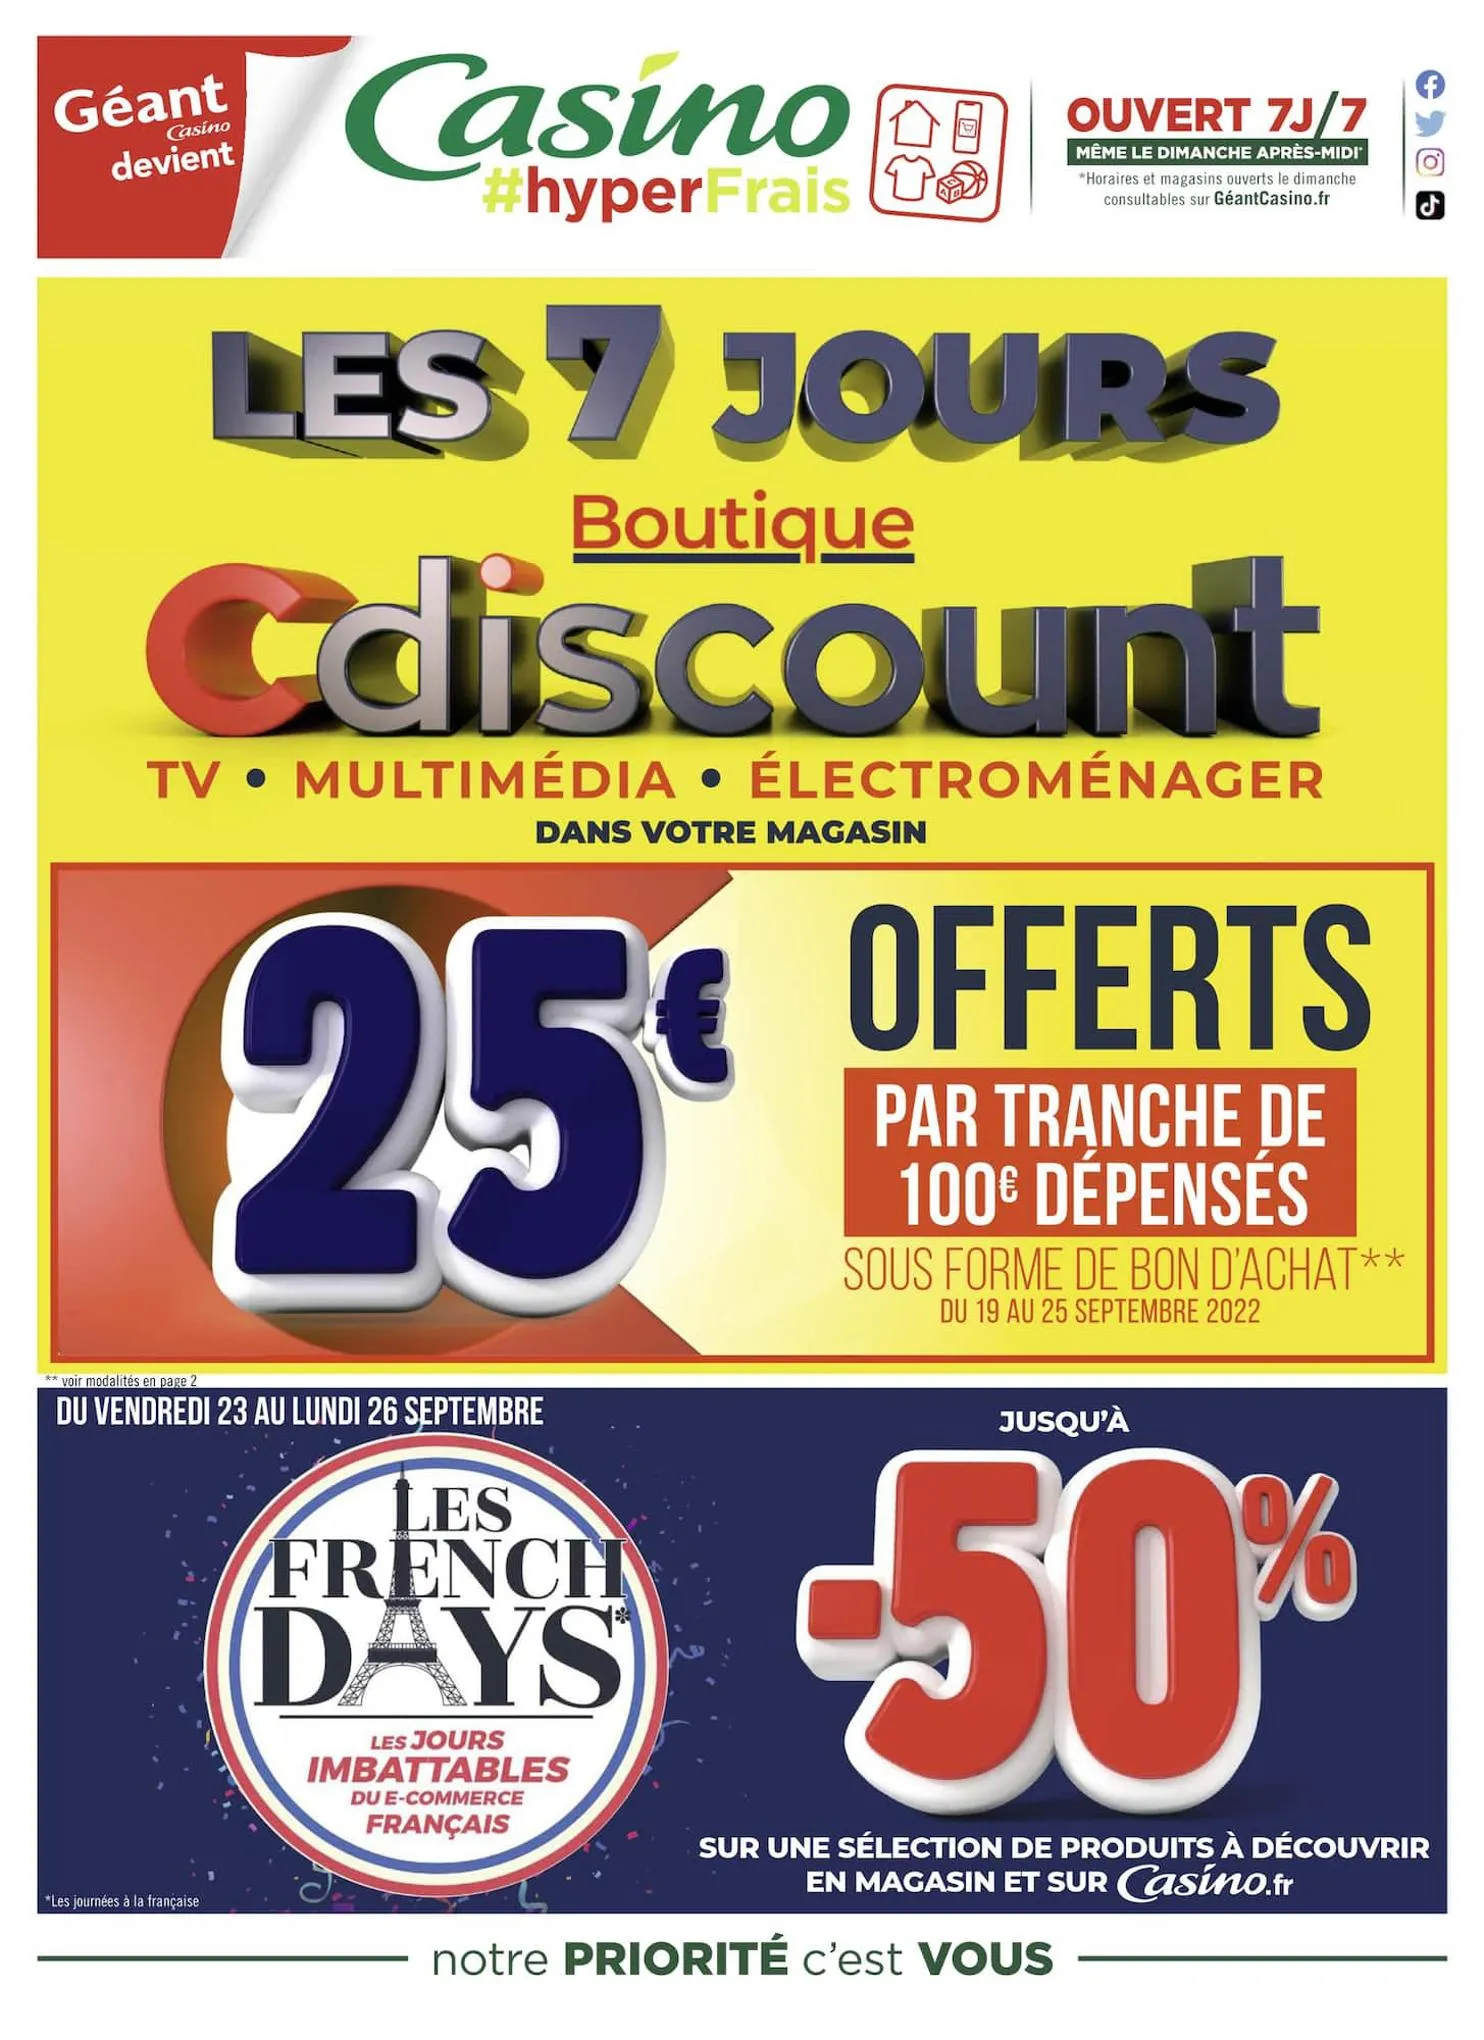 Catalogue Les 7 jours Cdiscount, page 00001